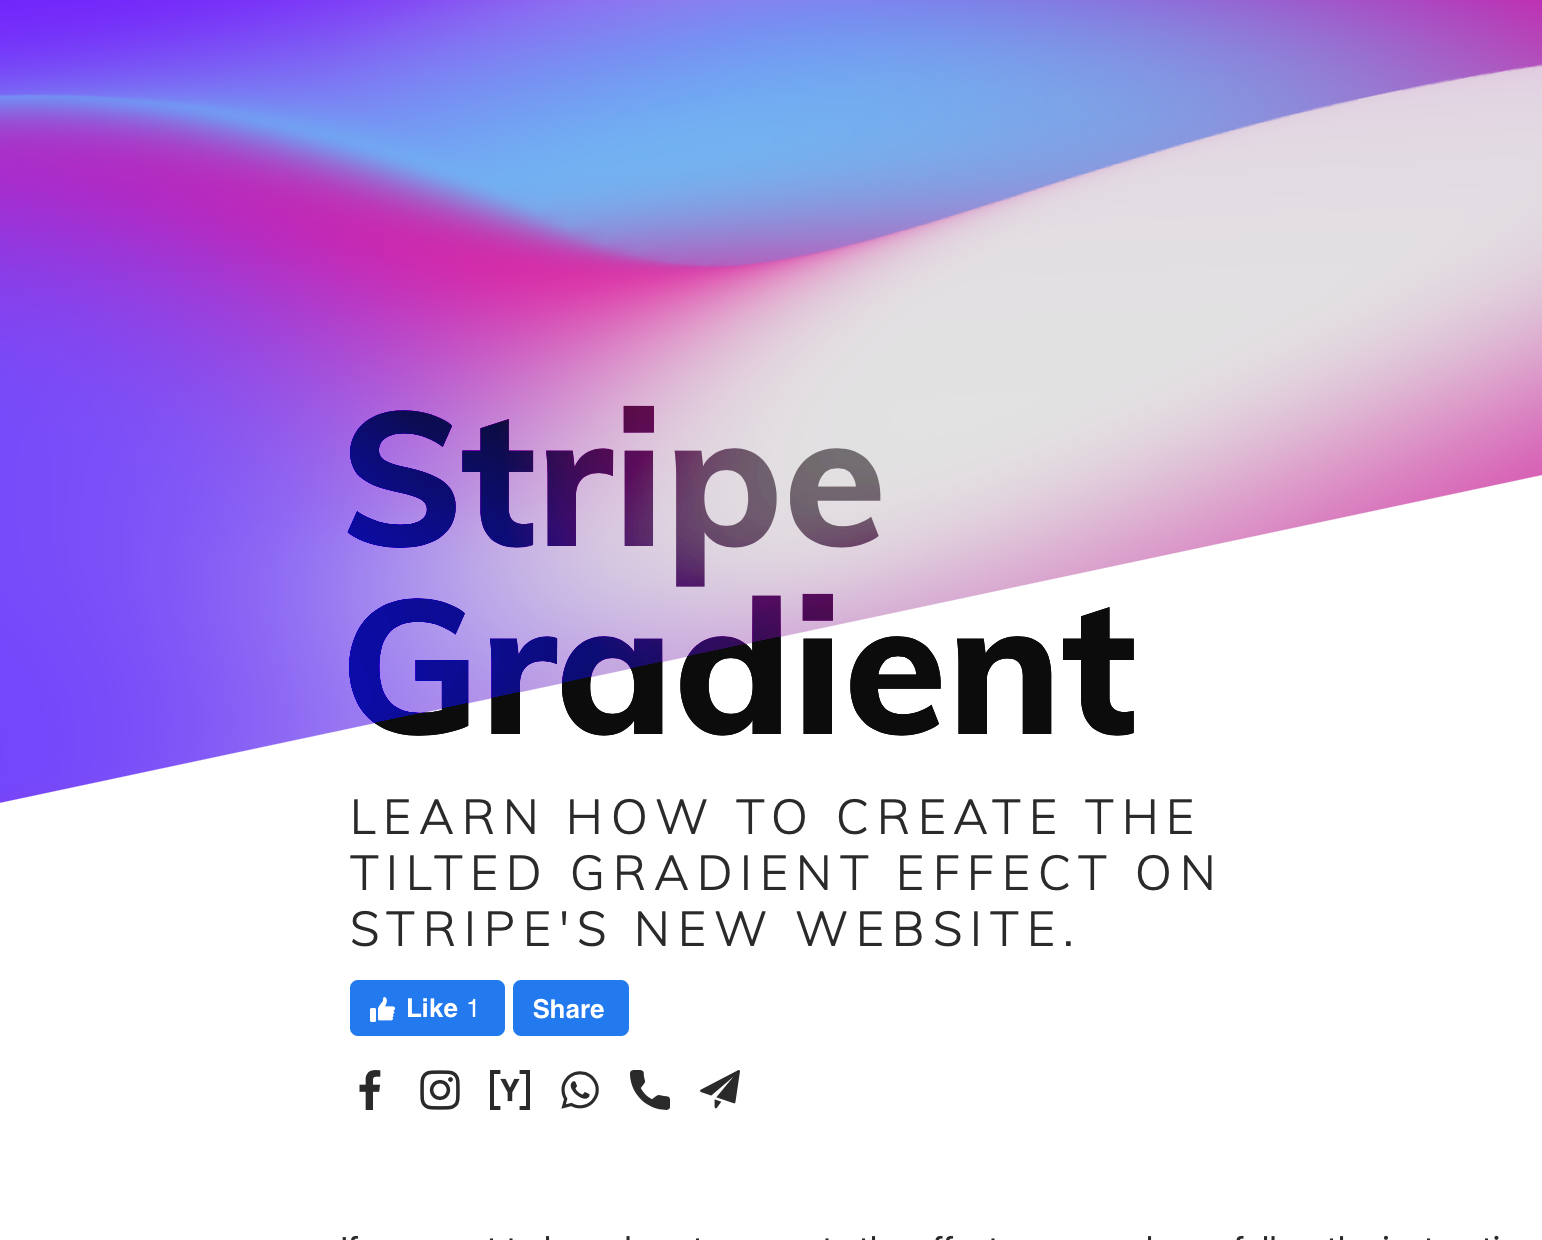 Stripe website gradient effect: Những hiệu ứng gradient đặc biệt sẽ giúp trang web của bạn nổi bật và độc đáo hơn. Hãy khám phá cách sử dụng hiệu ứng gradient của Stripe để tạo ra trang web đẹp và tương tác hơn.